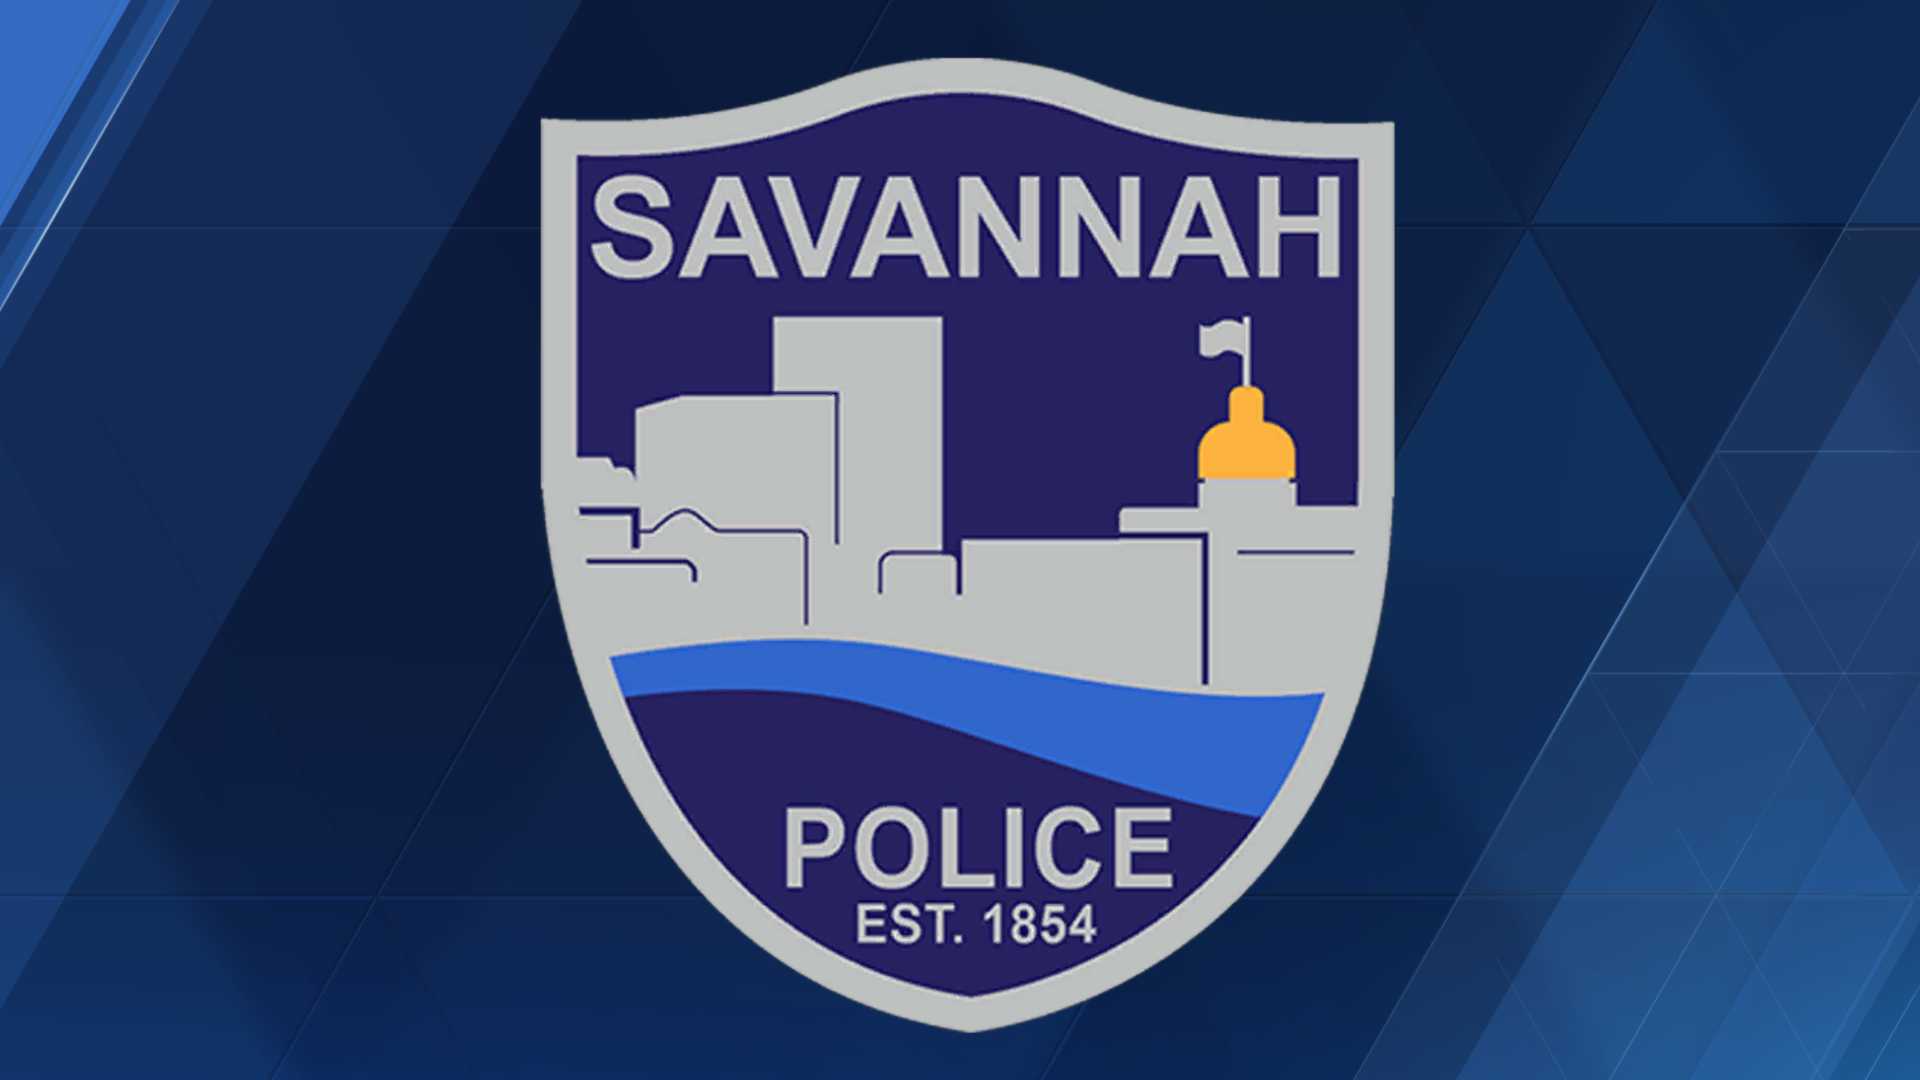 savannah-police-0124-1527266821-2